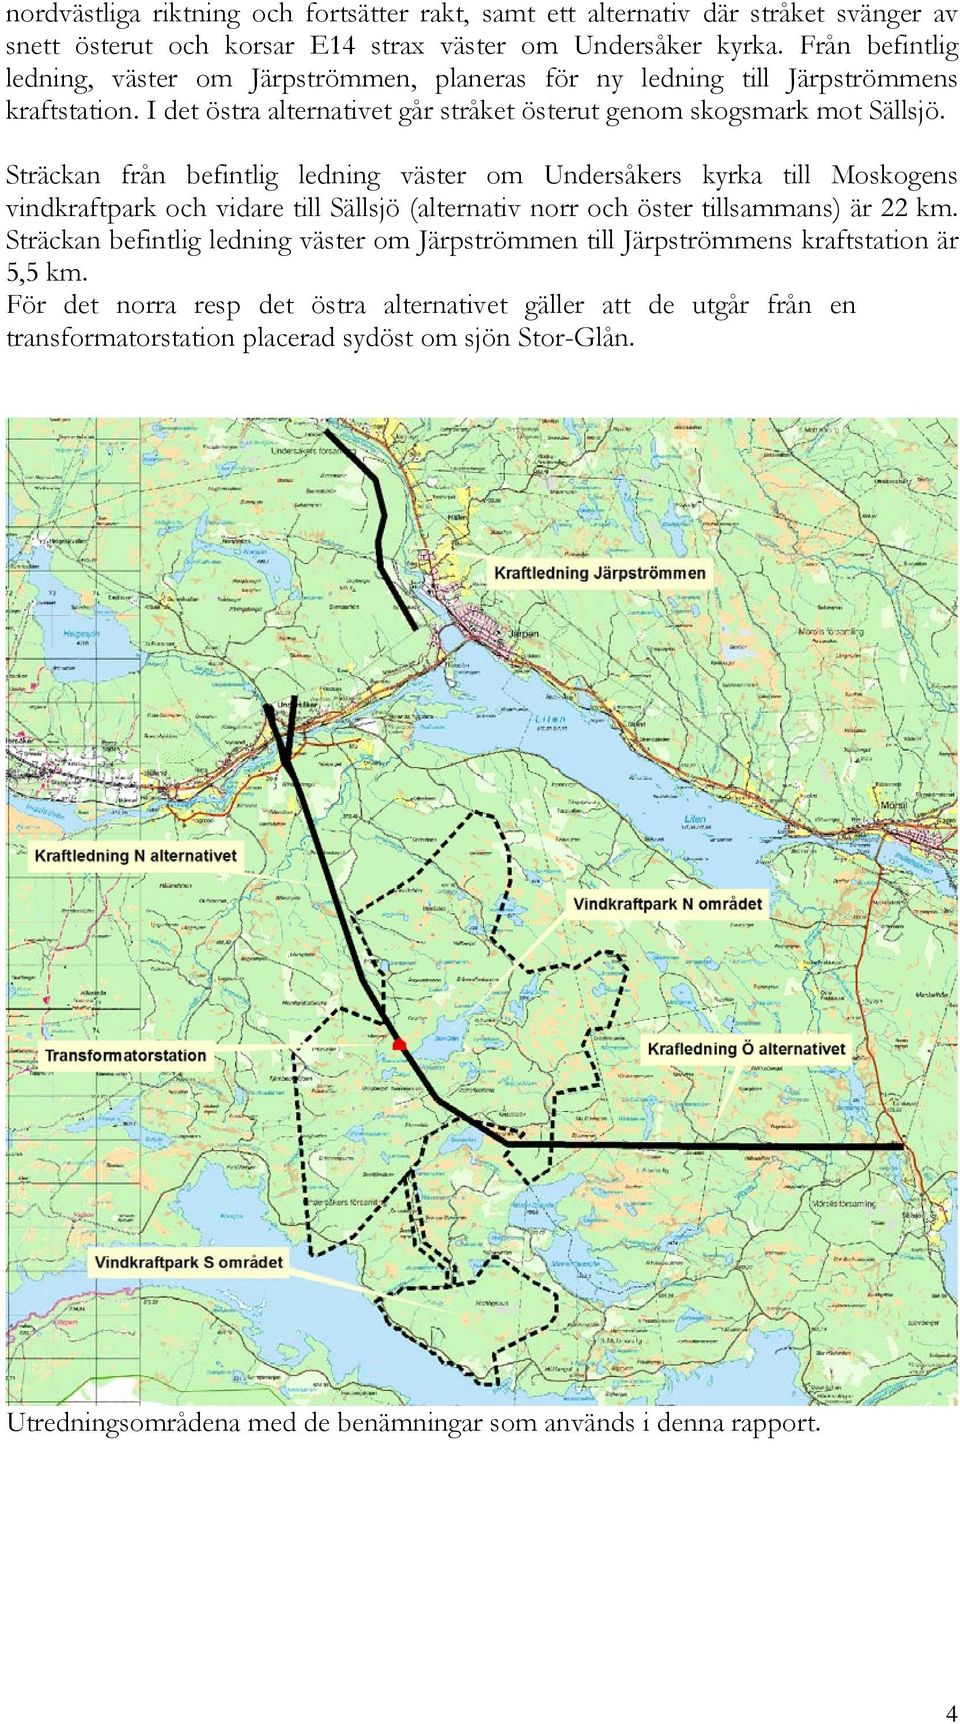 Sträckan från befintlig ledning väster om Undersåkers kyrka till Moskogens vindkraftpark och vidare till Sällsjö (alternativ norr och öster tillsammans) är 22 km.